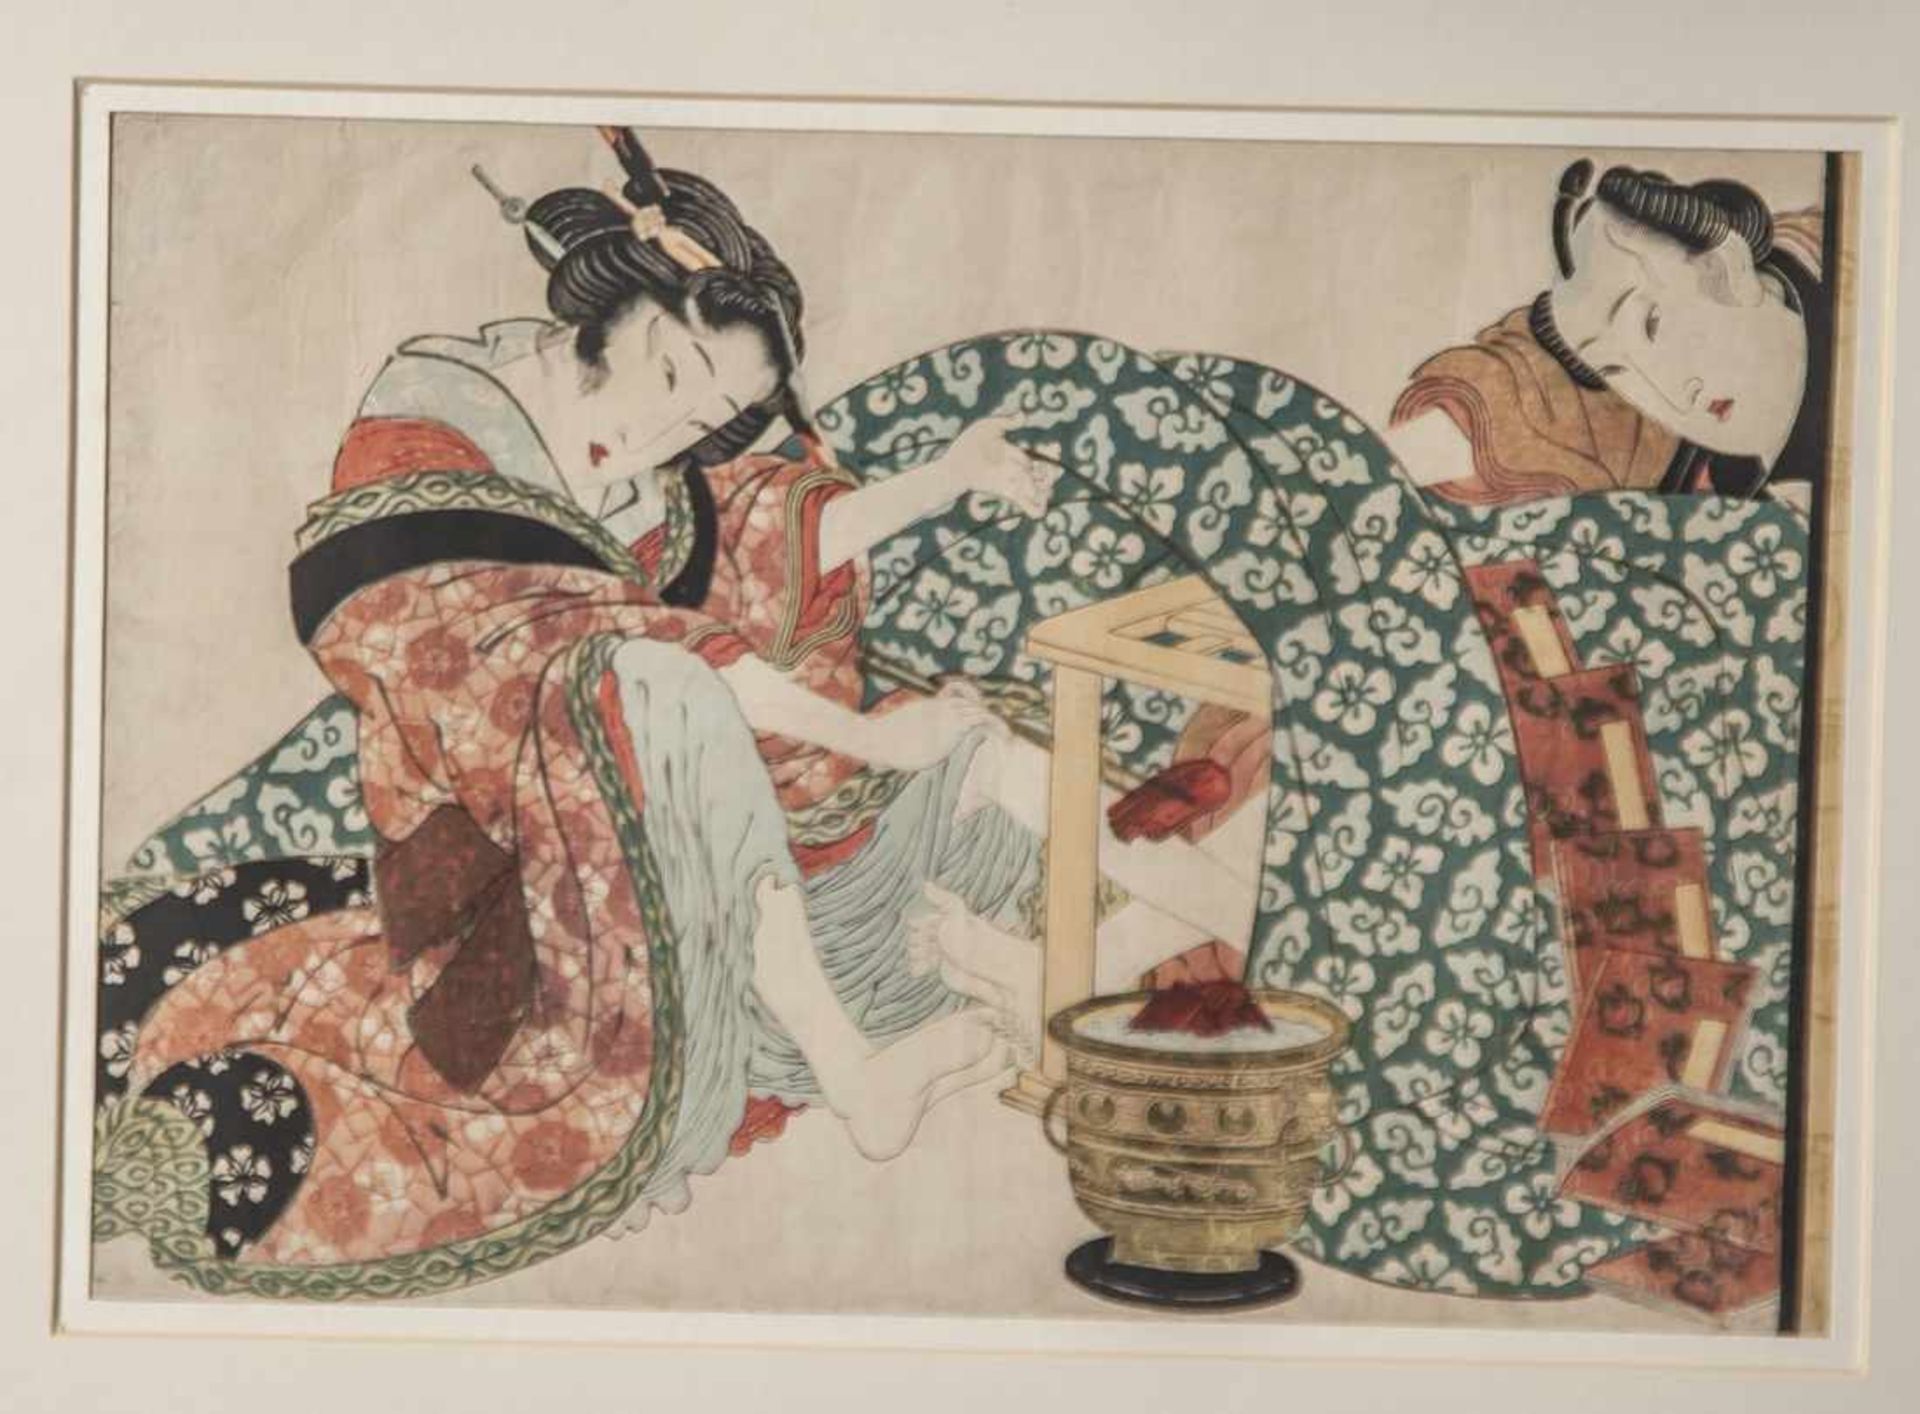 Eizan, Kikugawa, (wohl, 1787-1867), Farbholzschnitt, ca. 26 x 38 cm, PP, ungerahmt.